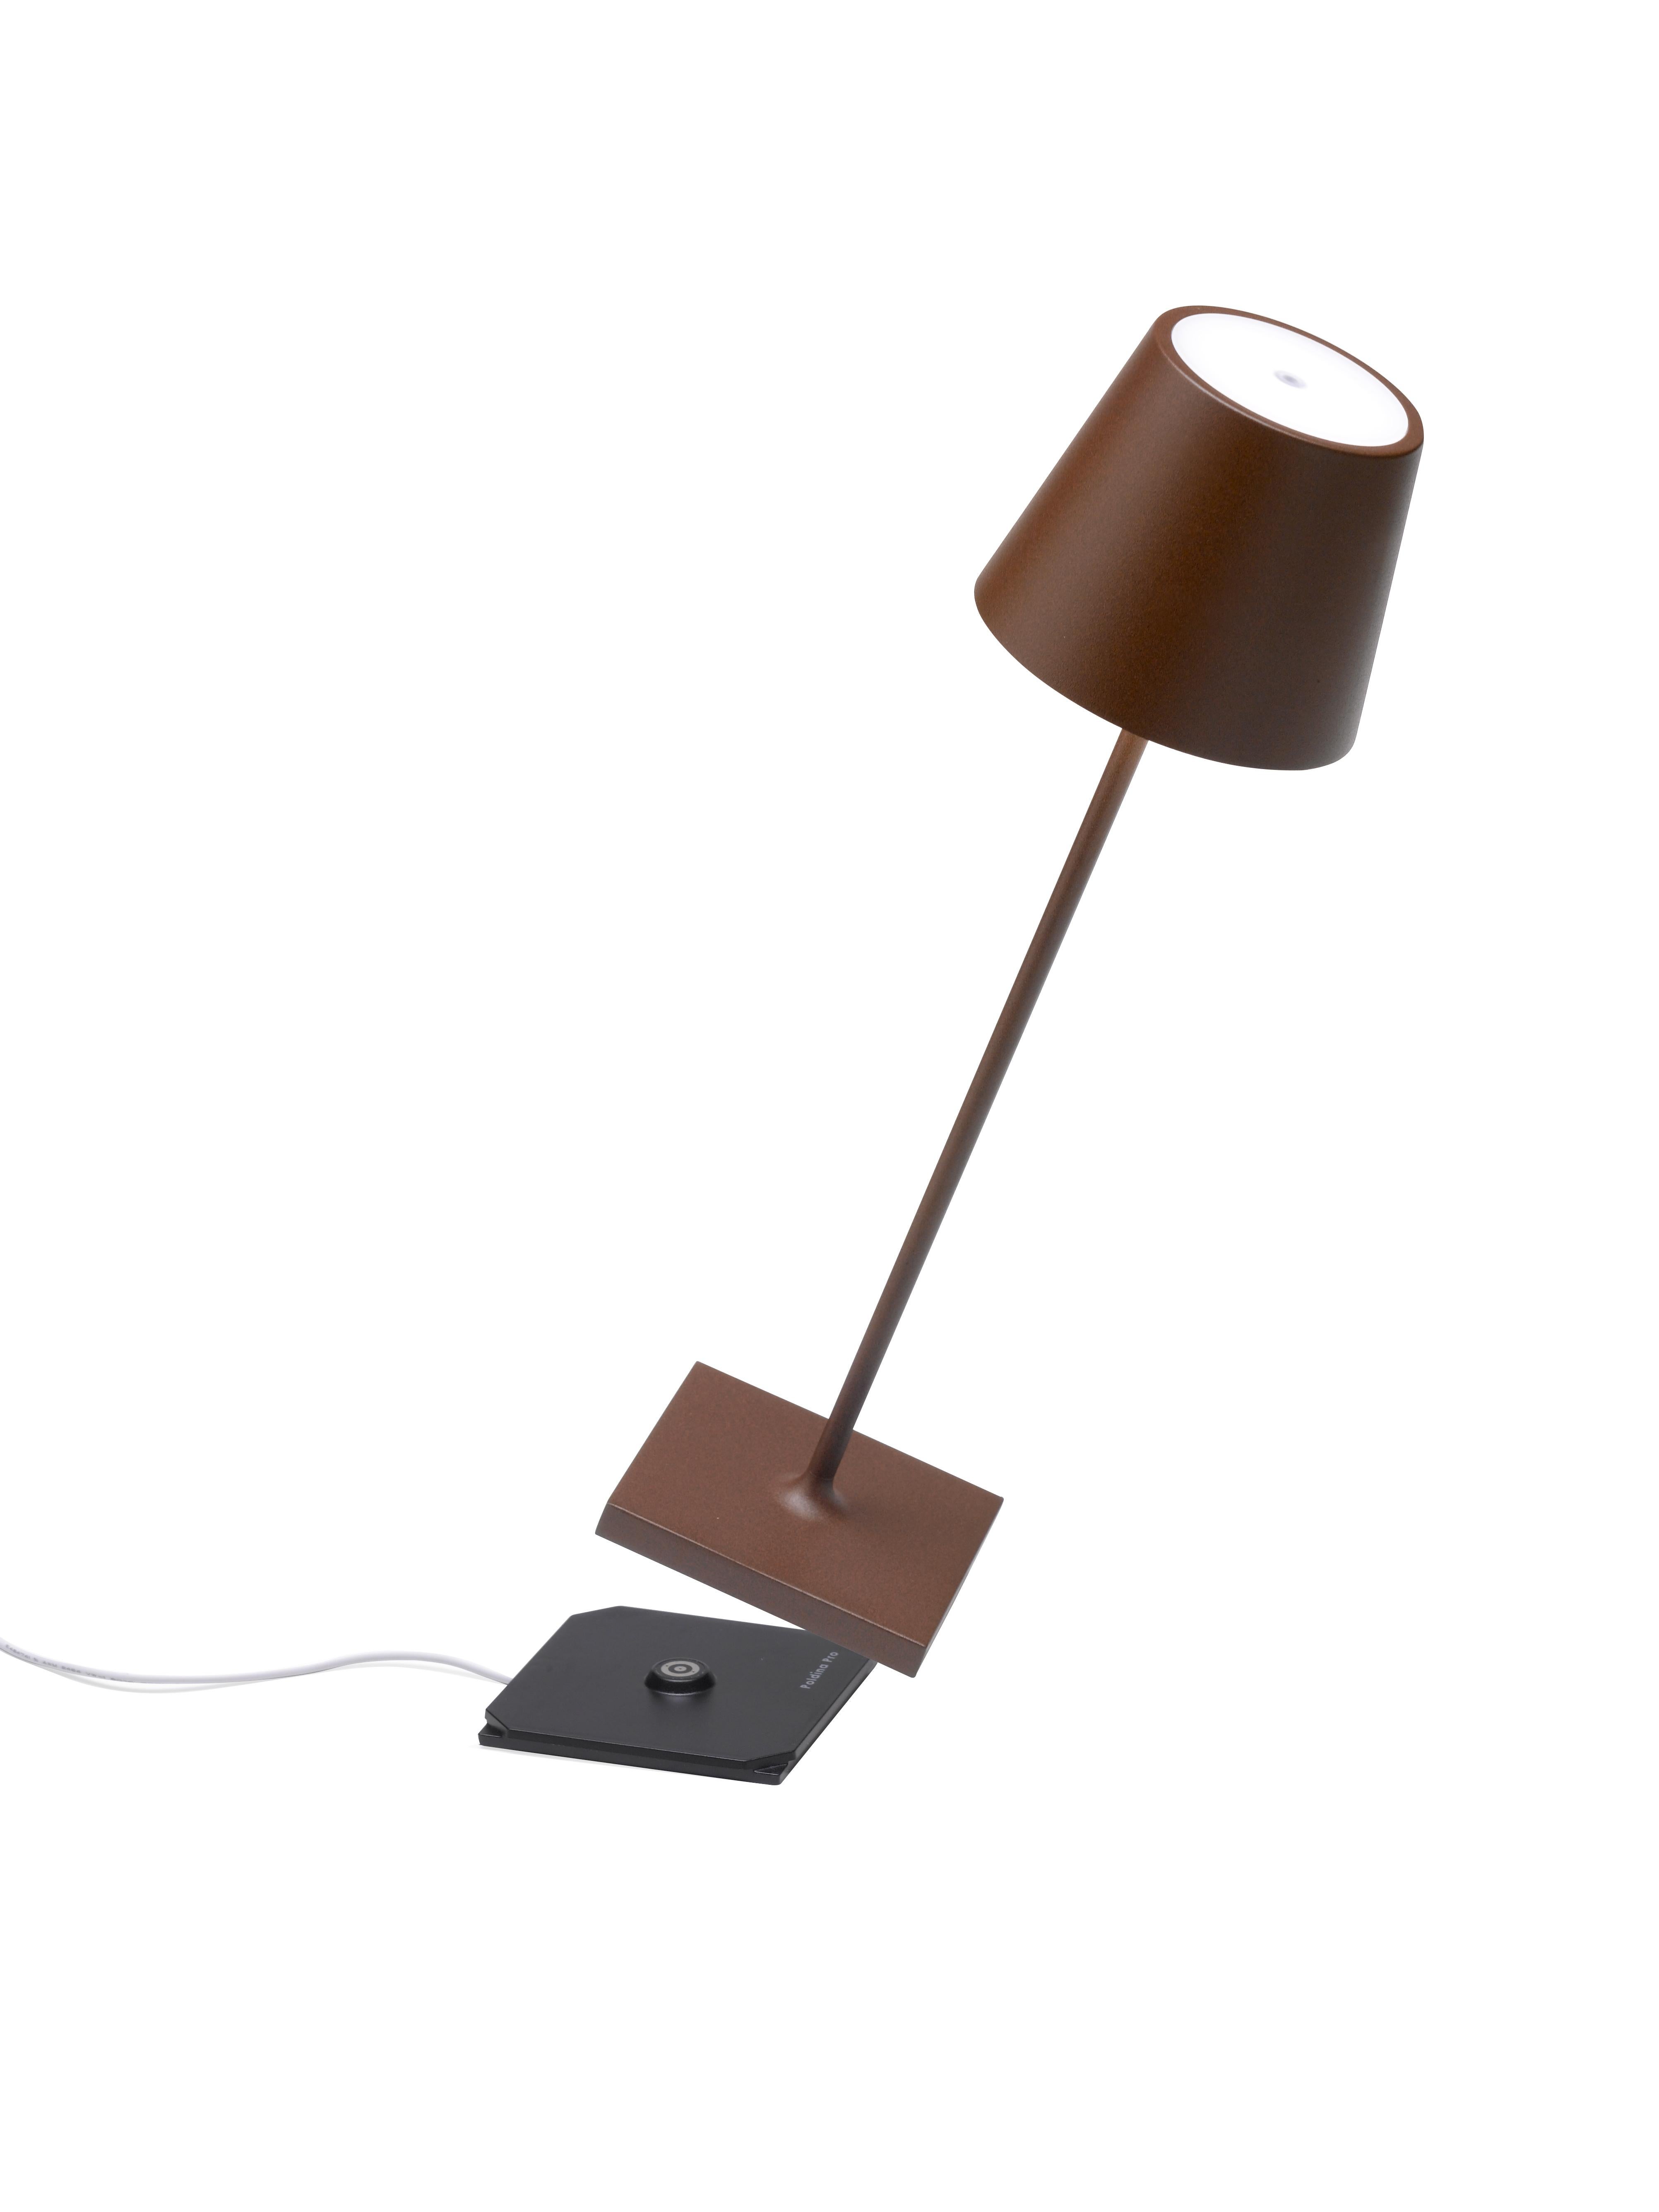 La lumière là où vous la voulez ! La lampe de table Poldina Pro est sans fil, rechargeable, réglable en intensité et offre plus de 9 heures d'éclairage sans fil. Lisez ci-dessous les nombreux autres attributs et caractéristiques de la lampe qui en